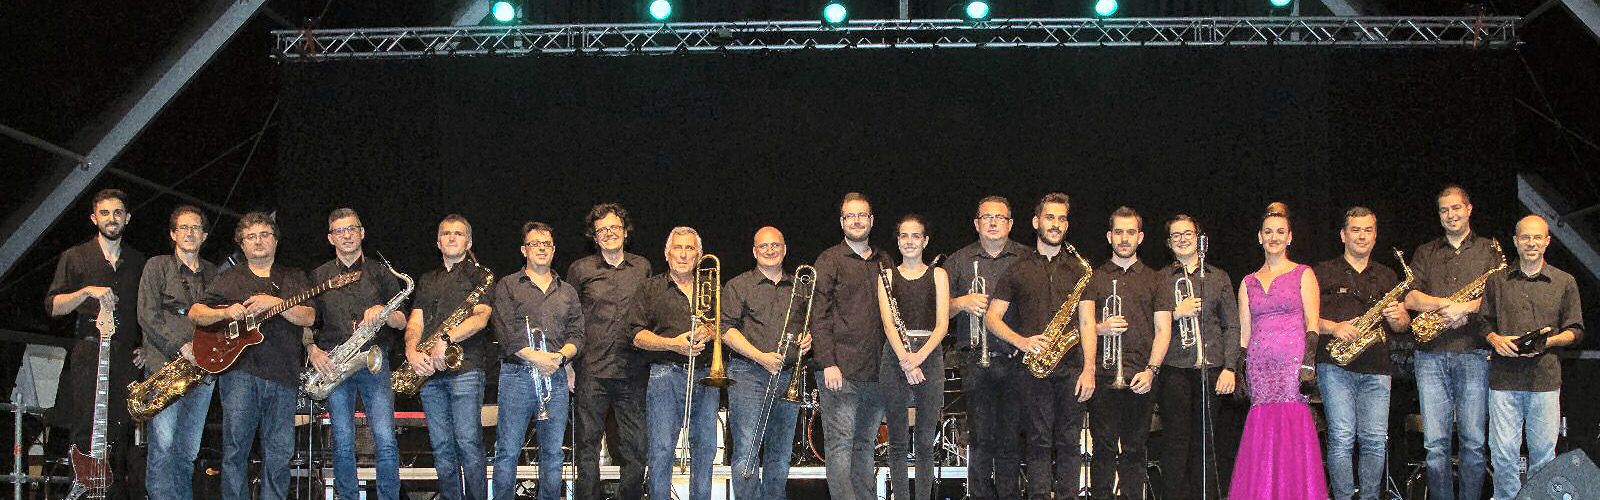 Actuació a Vallibona demà diumenge de la Bing Band Band d’Alcanar